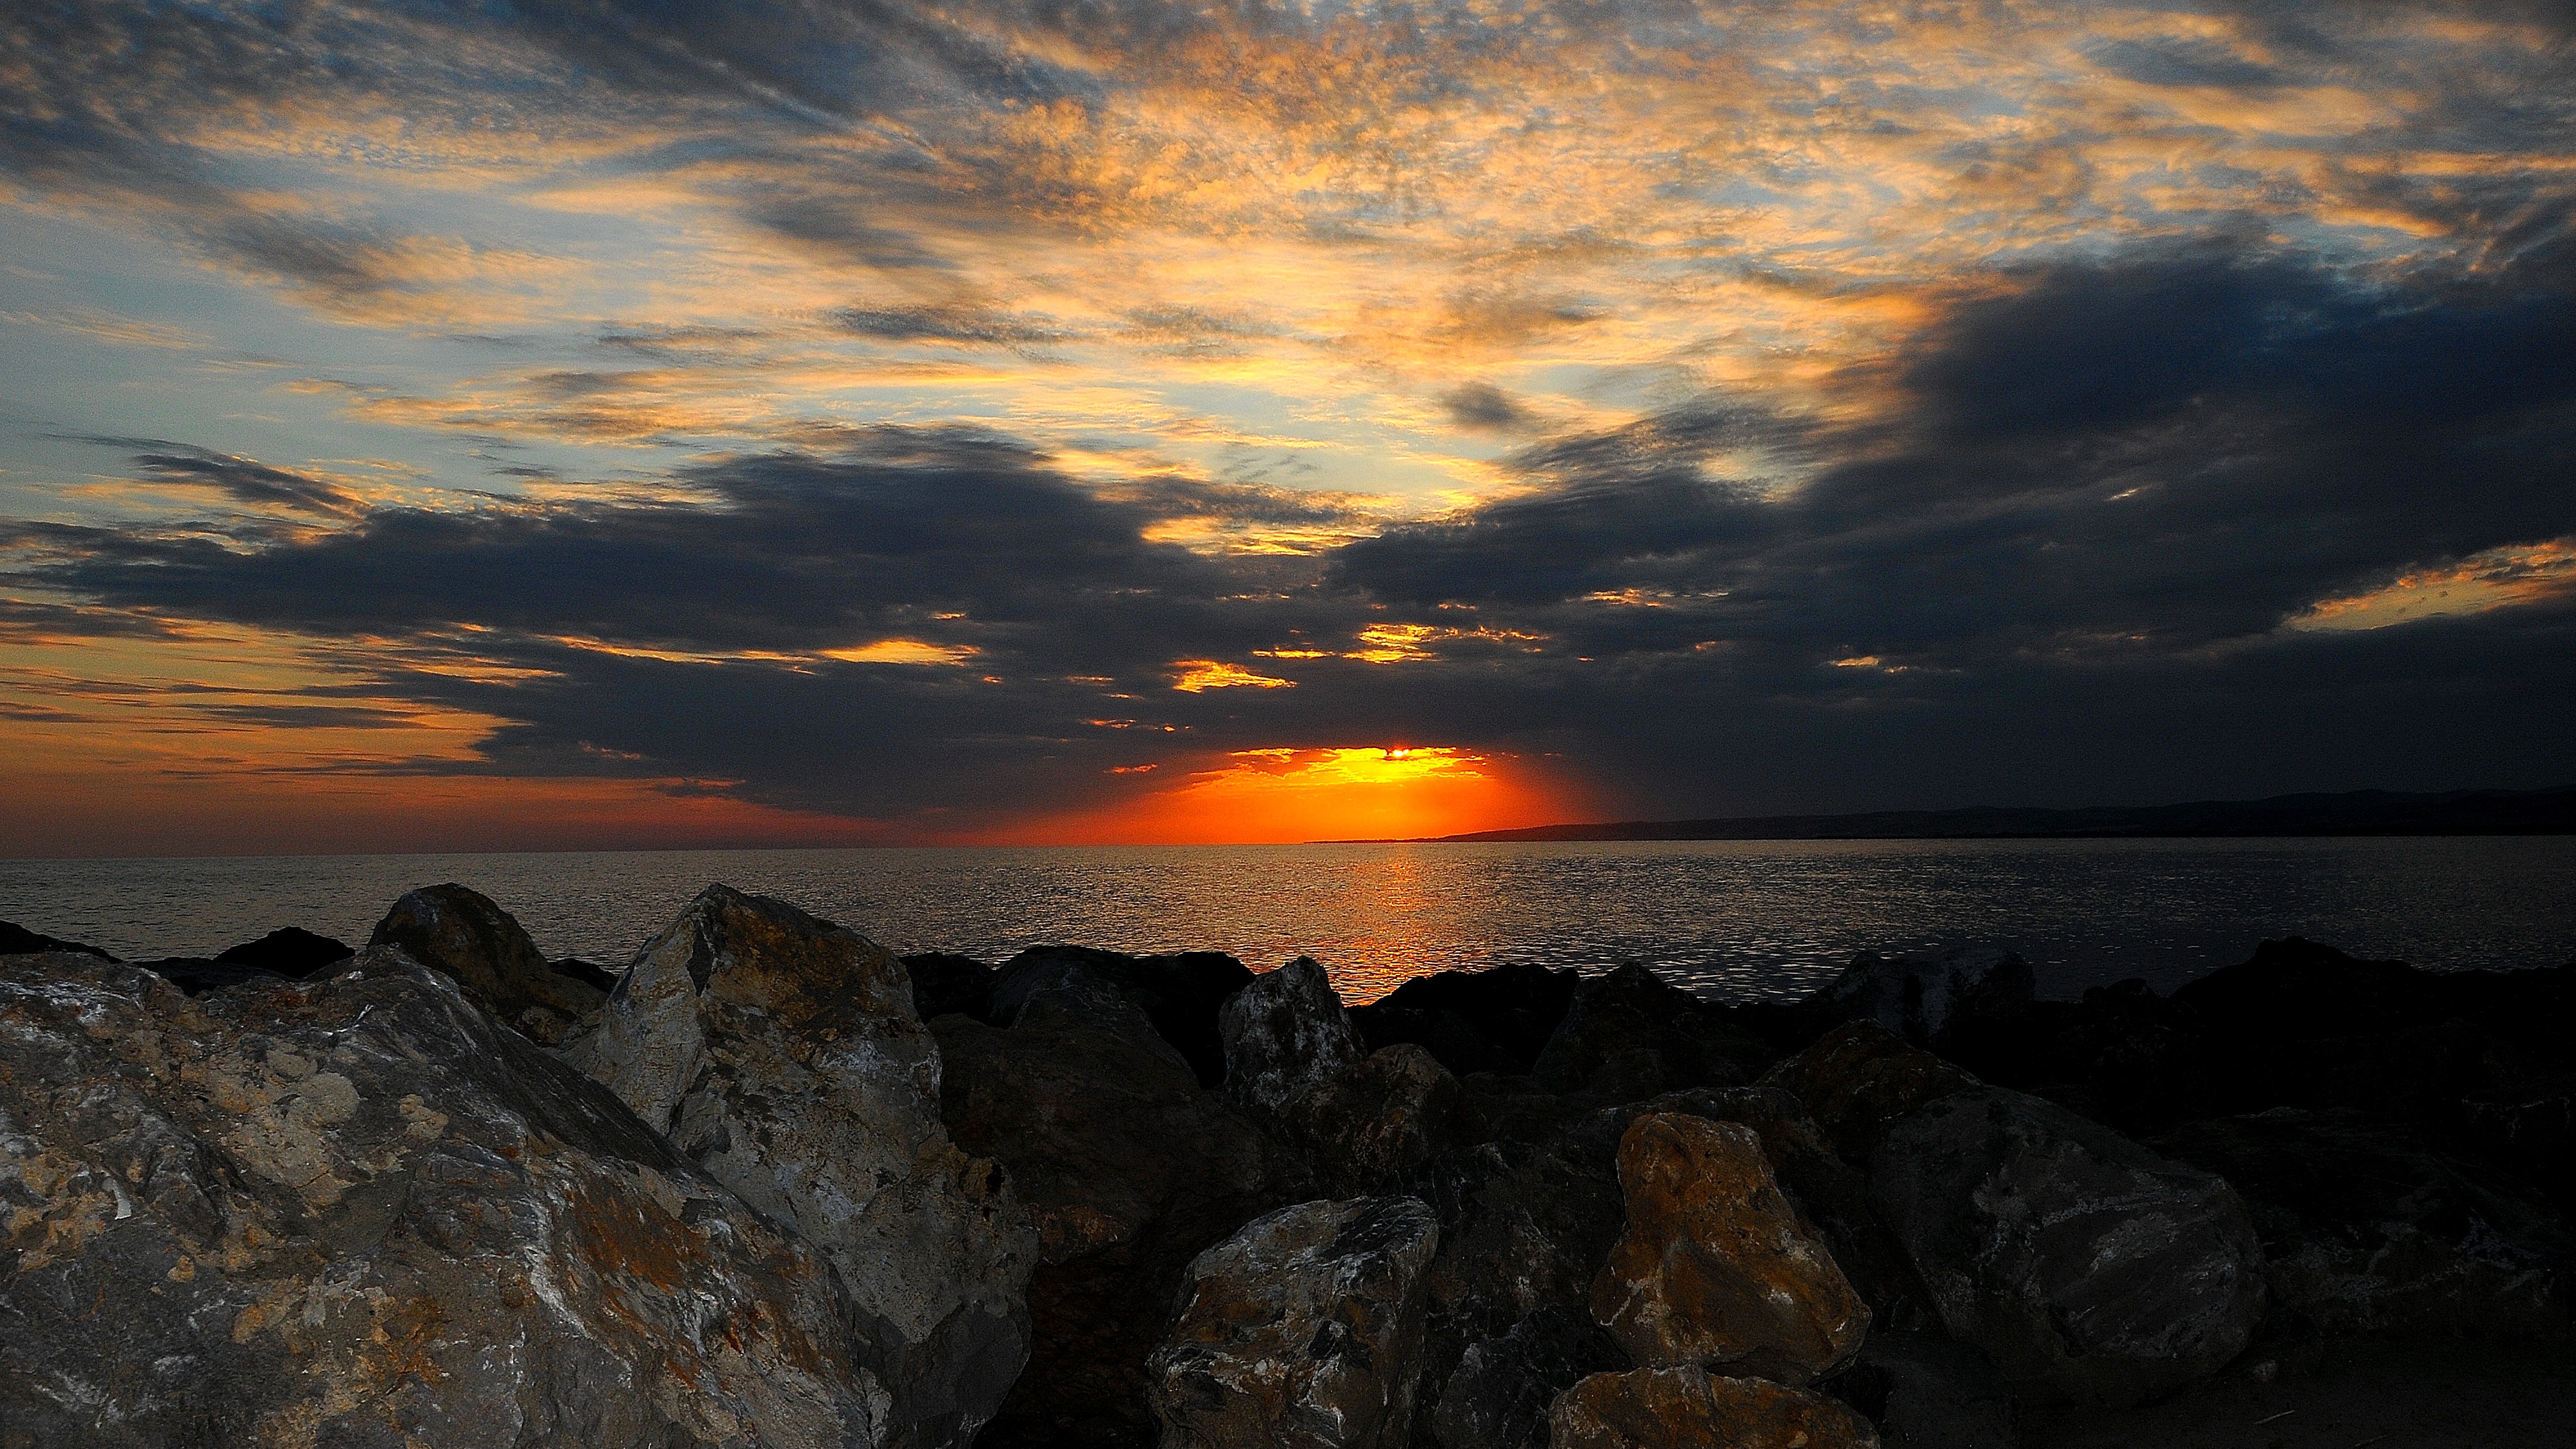 夕阳下的大海图片1080x2160分辨率下载,夕阳下的大海图片,图片,壁纸